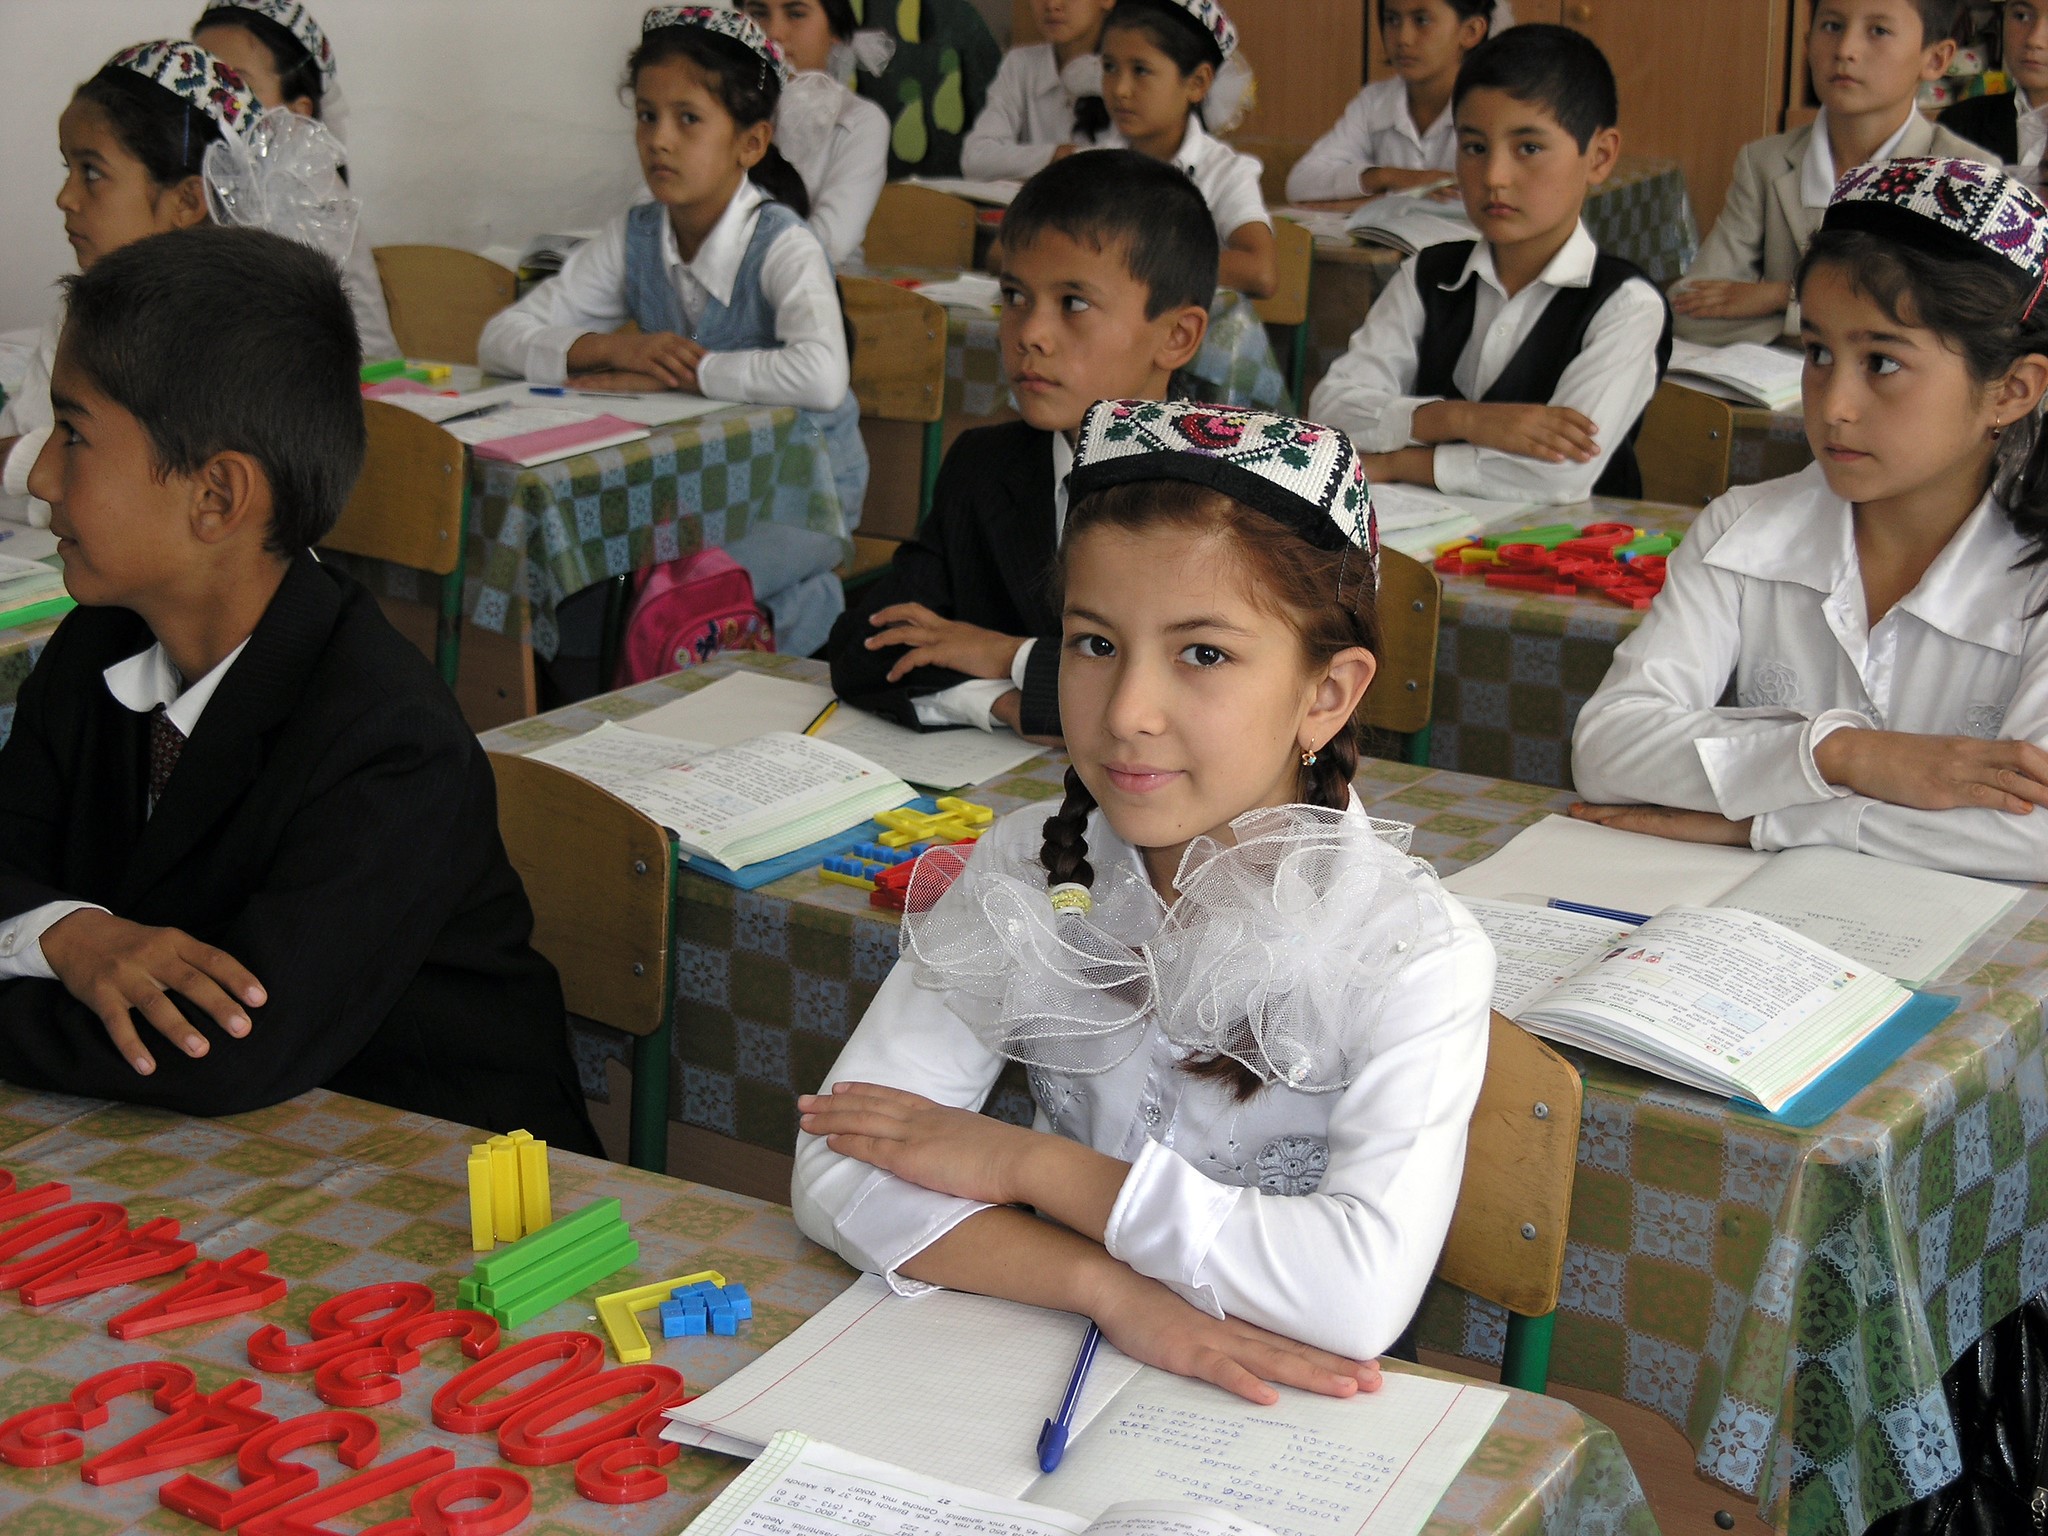 Узбекского школьник. Школа Узбекистан. Узбекские дети в школе. Начальная школа в Узбекистане. Узбекские девочки в школе.